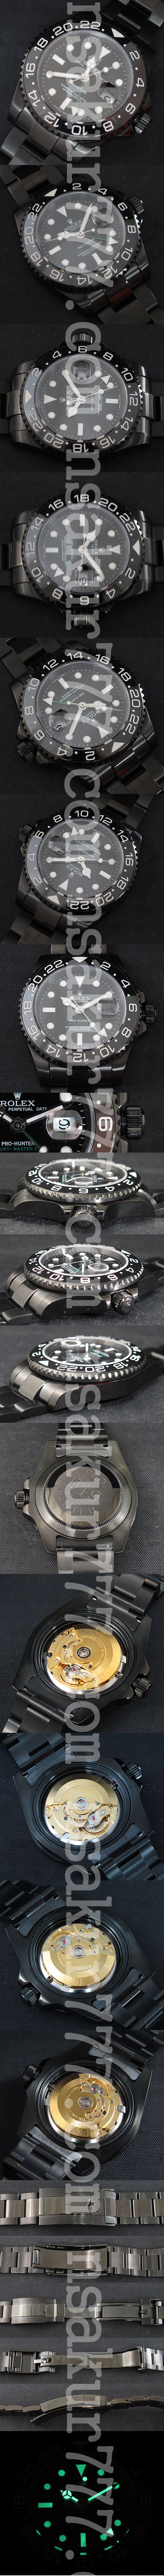 レプリカ時計ロレックス GMTマスターII プロハンター, Swiss ETA社 2836-2 ムーブメント搭載,ハイエンドモデル! - ウインドウを閉じる